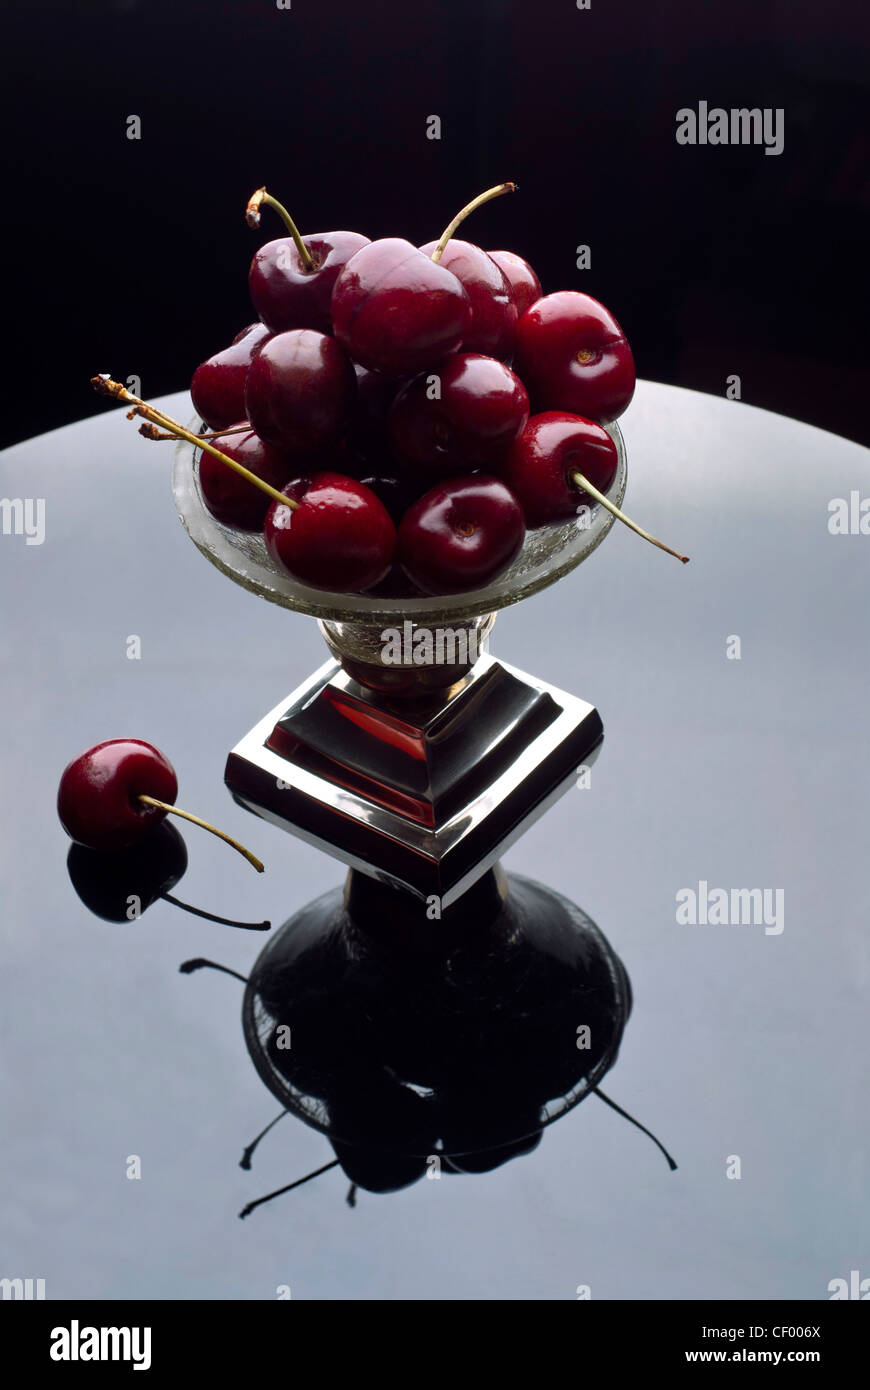 Cerise rouge entassés dans un bol en argent cristal reflète dans une surface réfléchissante Banque D'Images